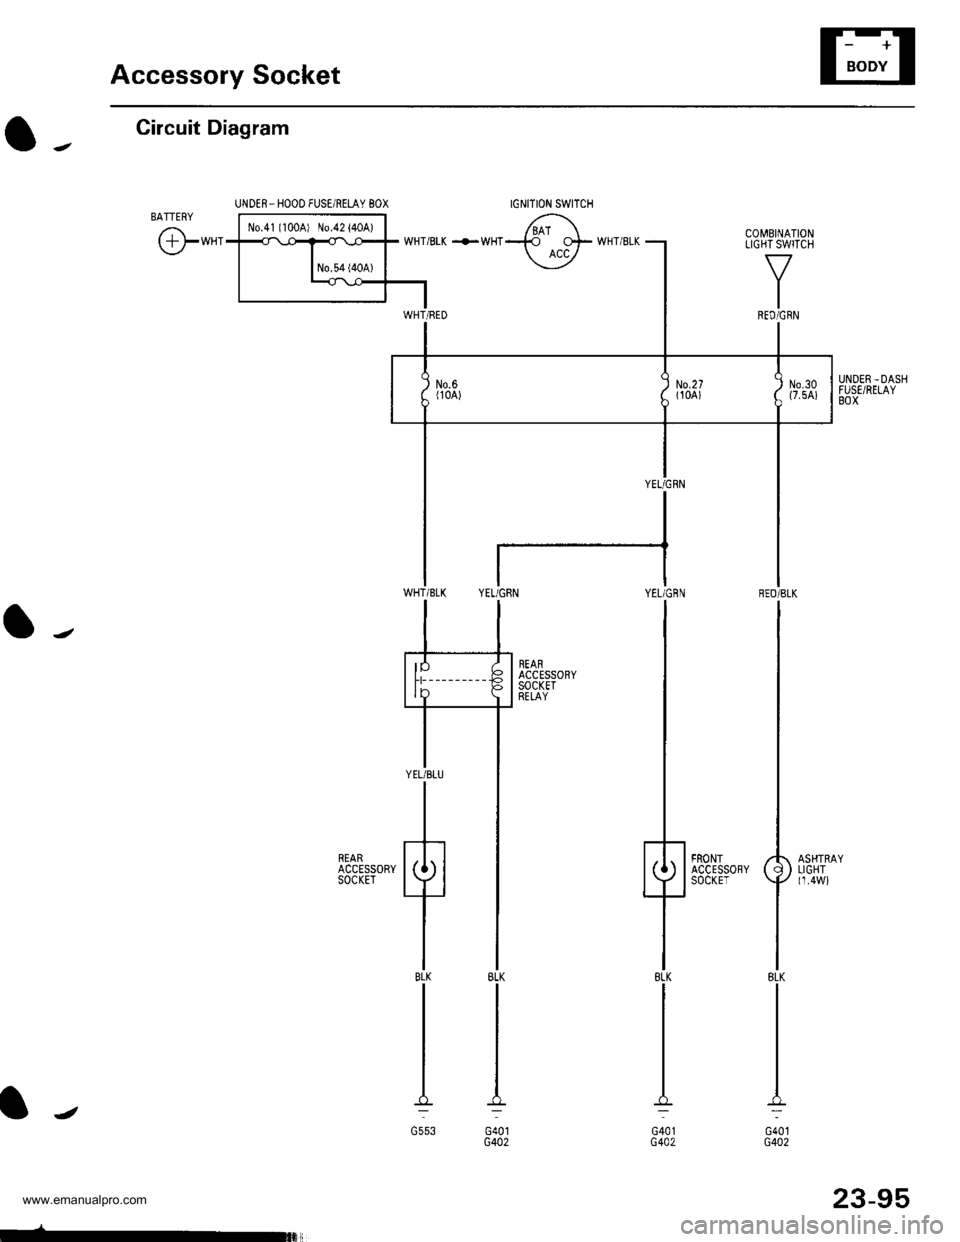 HONDA CR-V 1999 RD1-RD3 / 1.G Workshop Manual 
Accessory Socket
IGNITION SWITCH
Circuit Diagram
UNDER_HOOO FUSE/RELAY 8OX
o-.
l-
lJ
txt 
Fffi^-.rr-.rrl 6\
t-**1*fffiT wHTBrK +*HT-137F wHr BLK
| -*T]
UNDER-DASHFUSE/RELAYBOX
YEL/GflN RED/BLK
lt
t